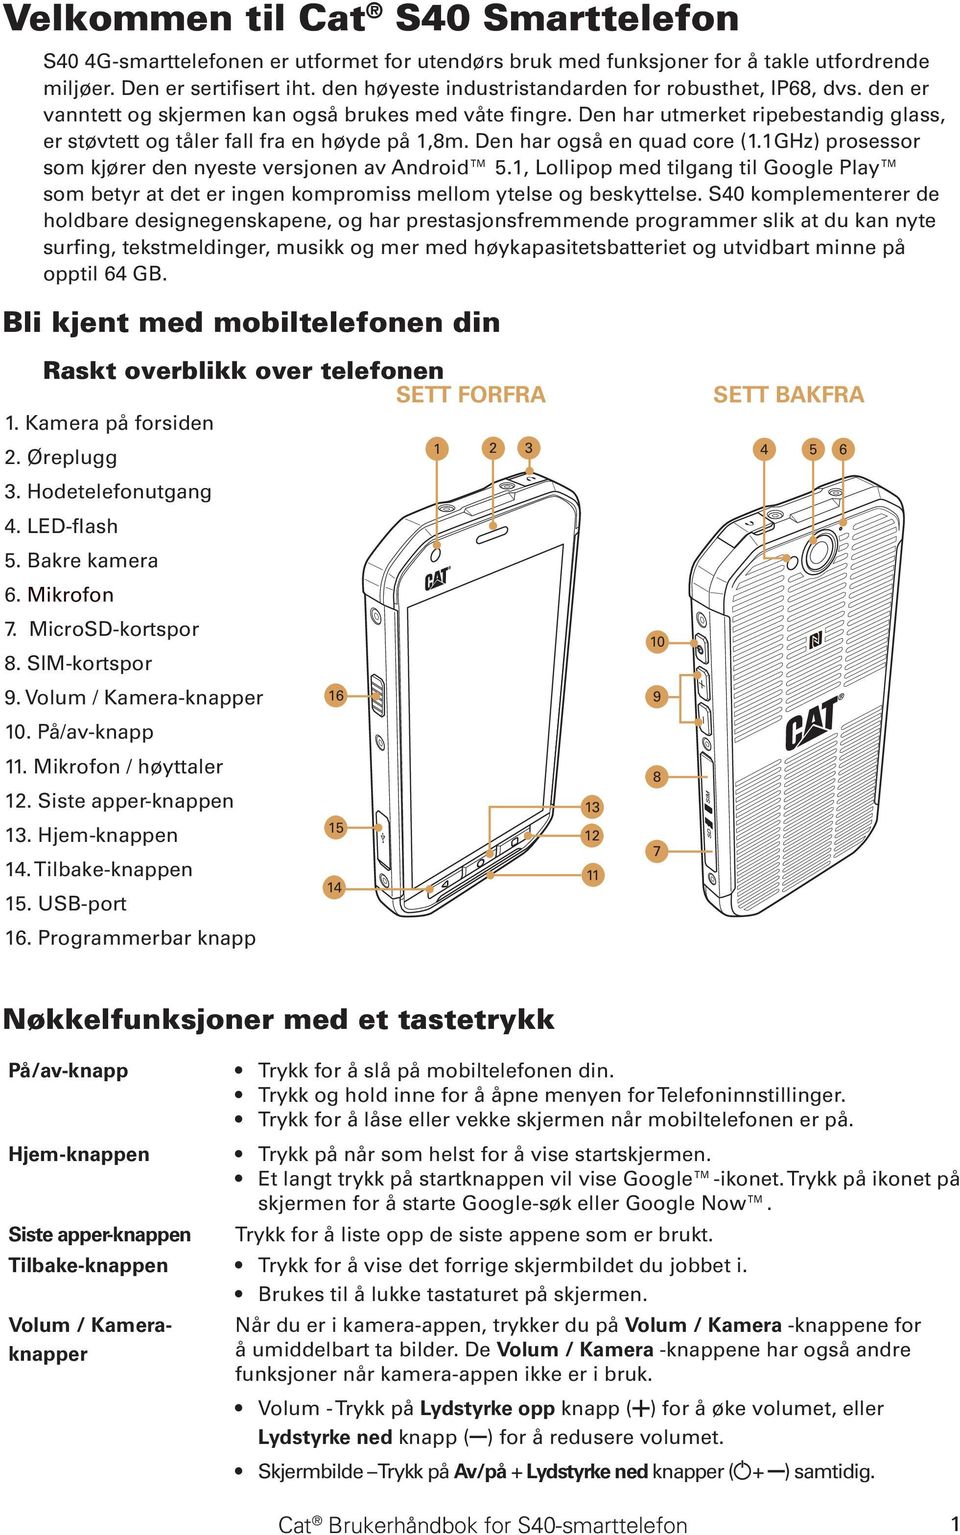 Cat S40 Smarttelefon Brukerhåndbok - PDF Gratis nedlasting